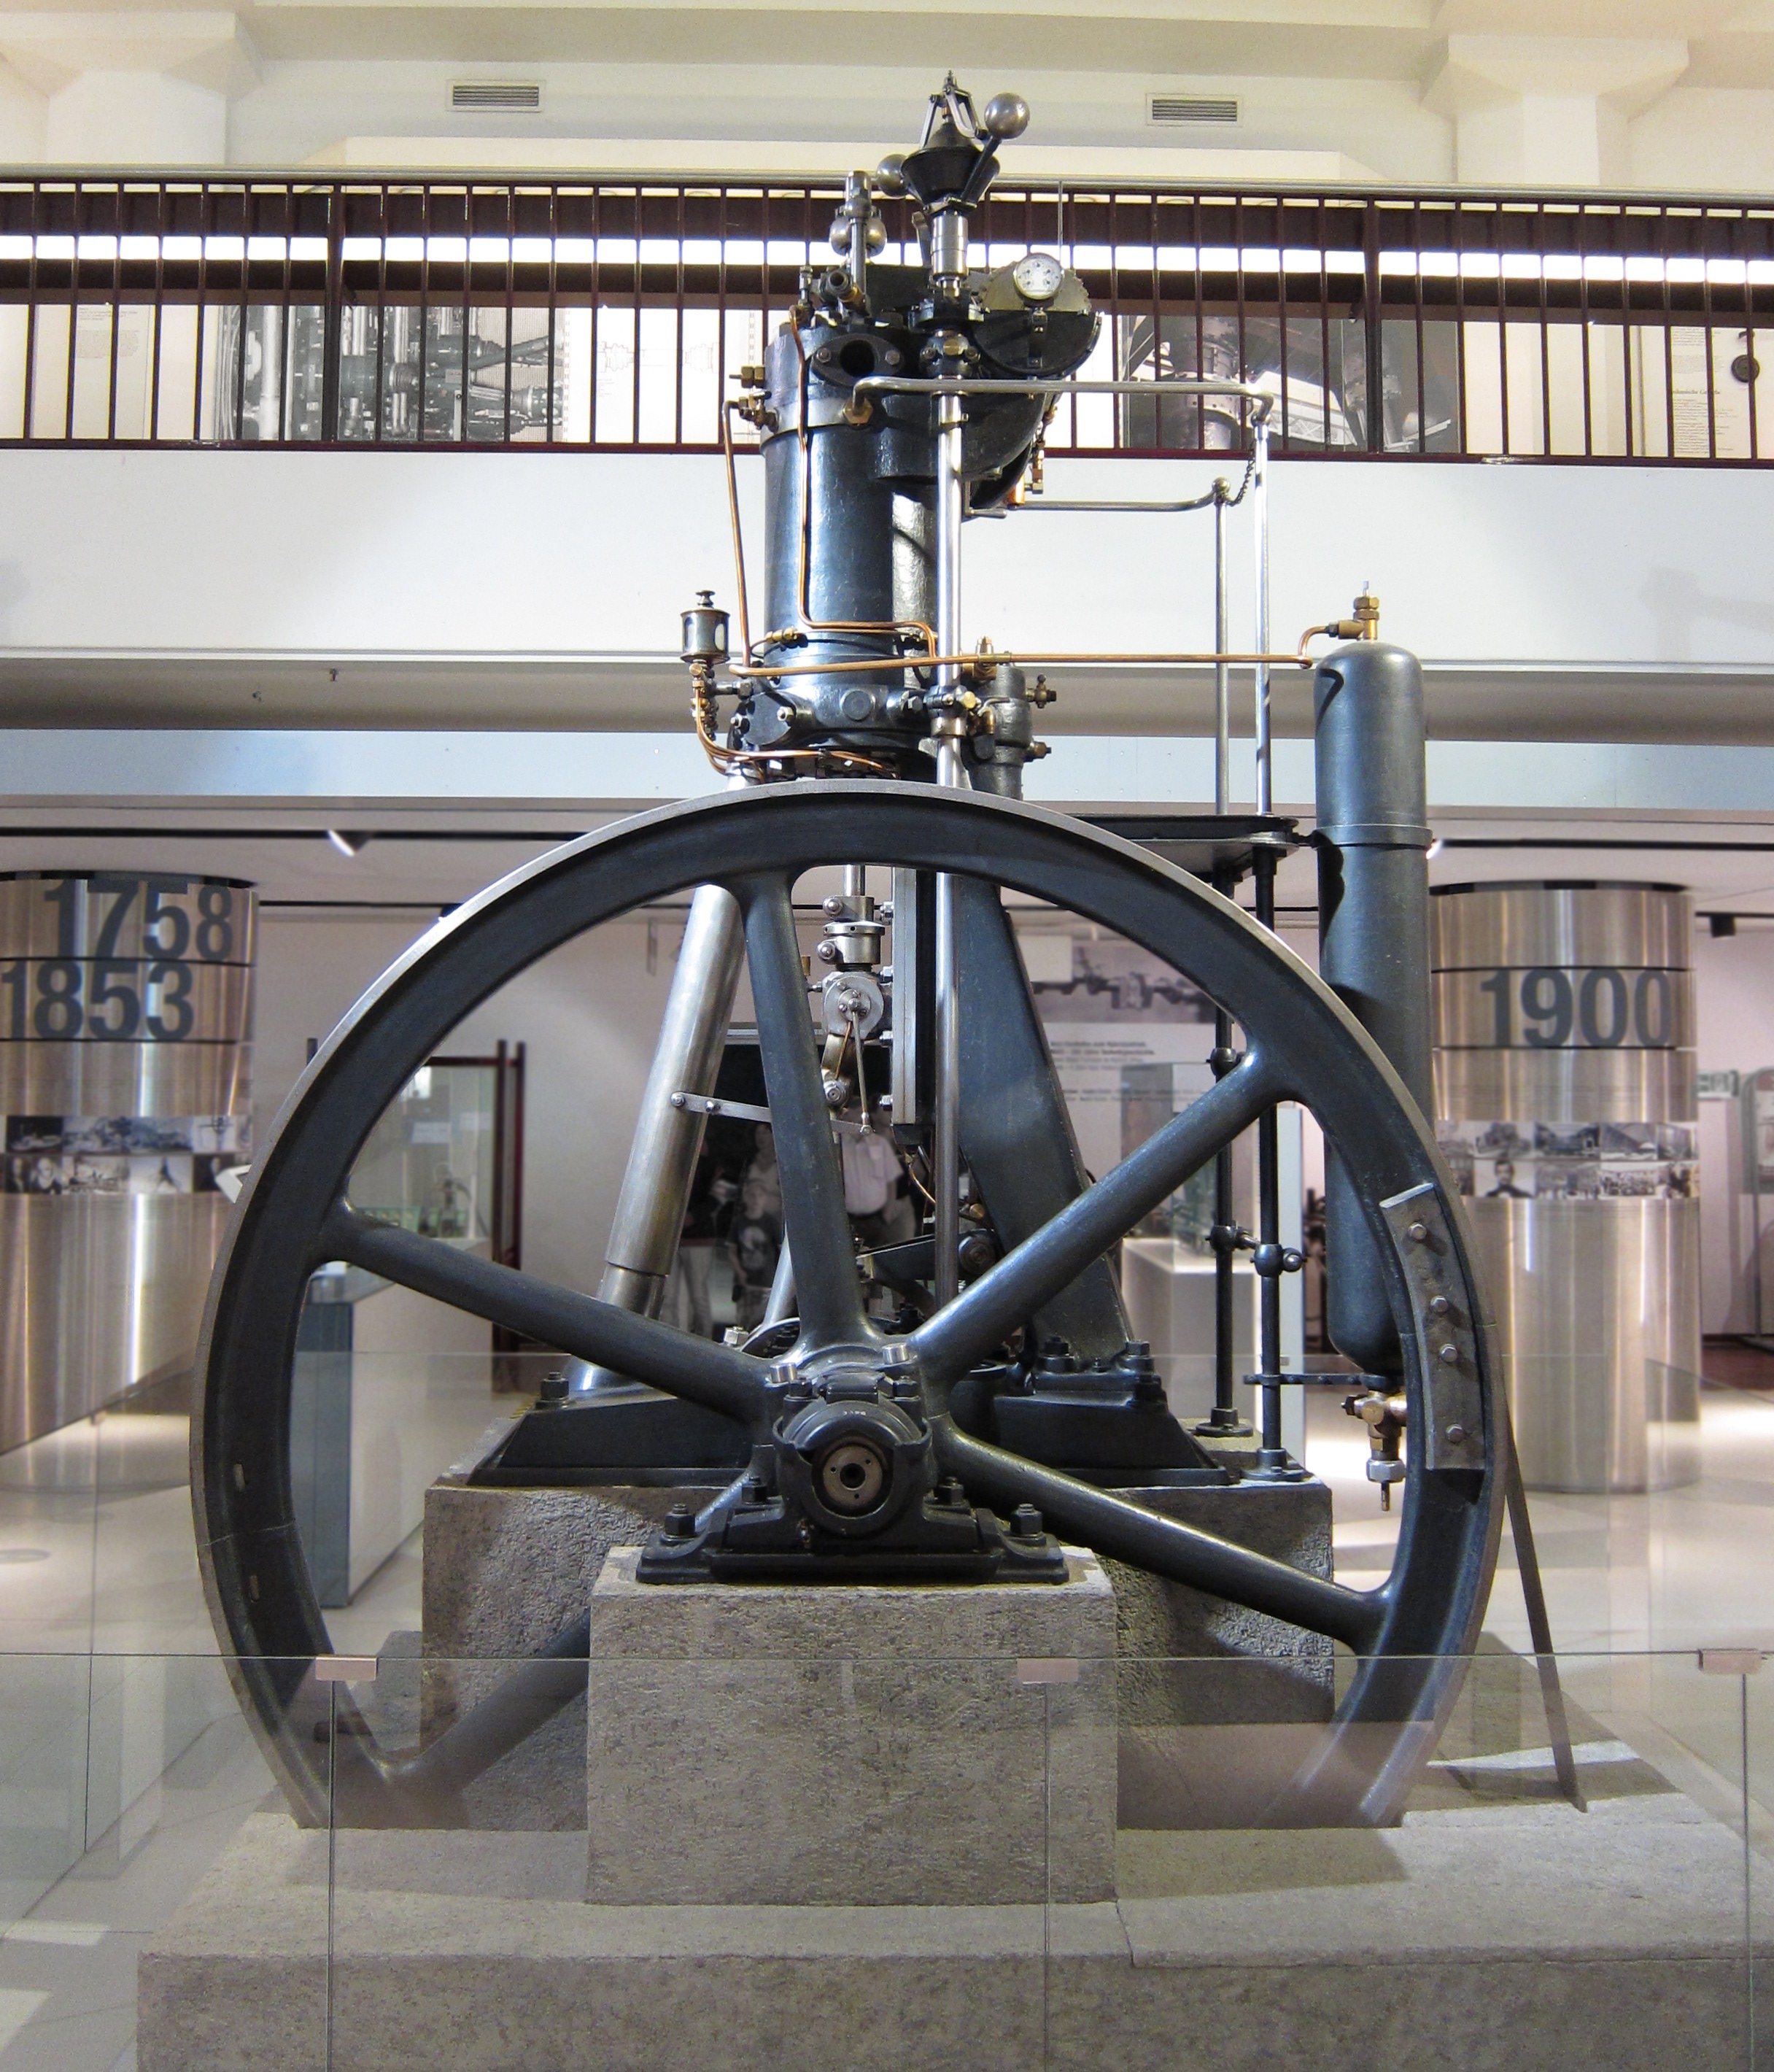 Historical Diesel engine in Deutsches Museum